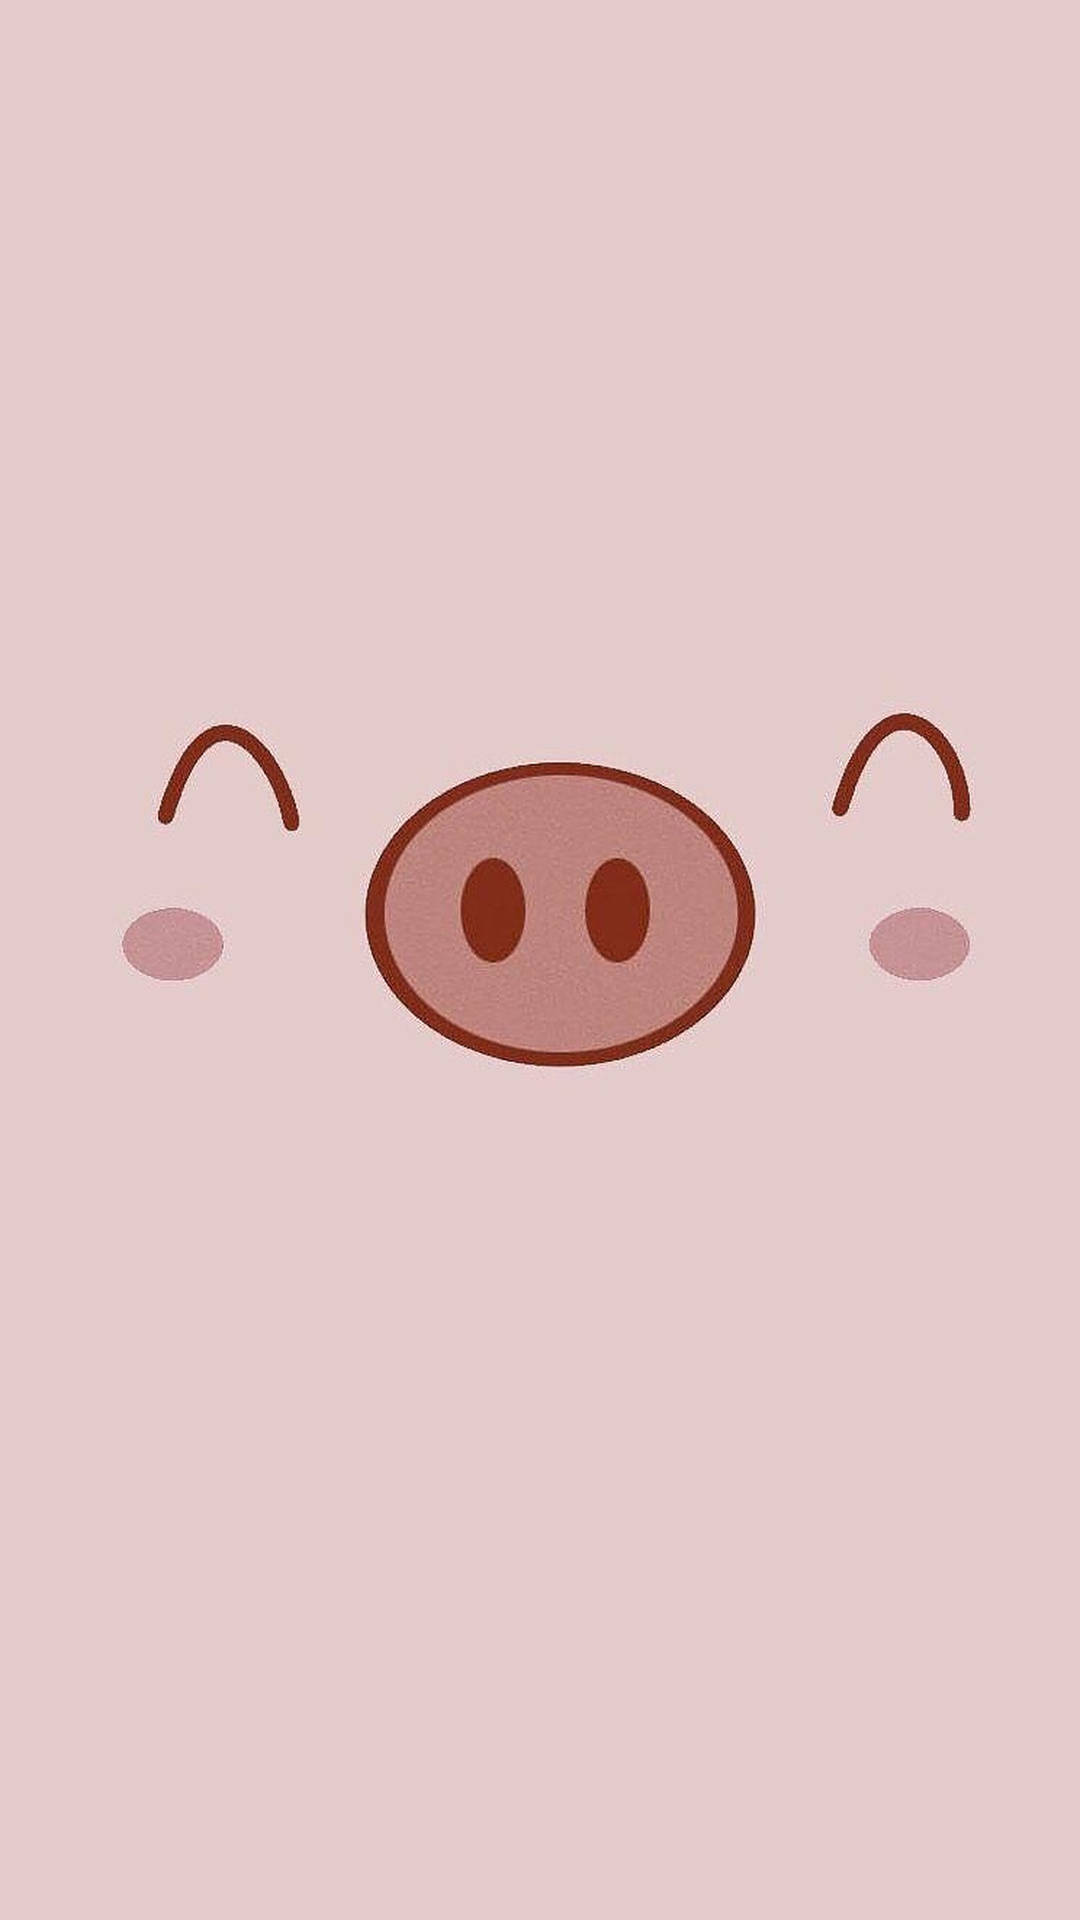 Cute Pig Smiling